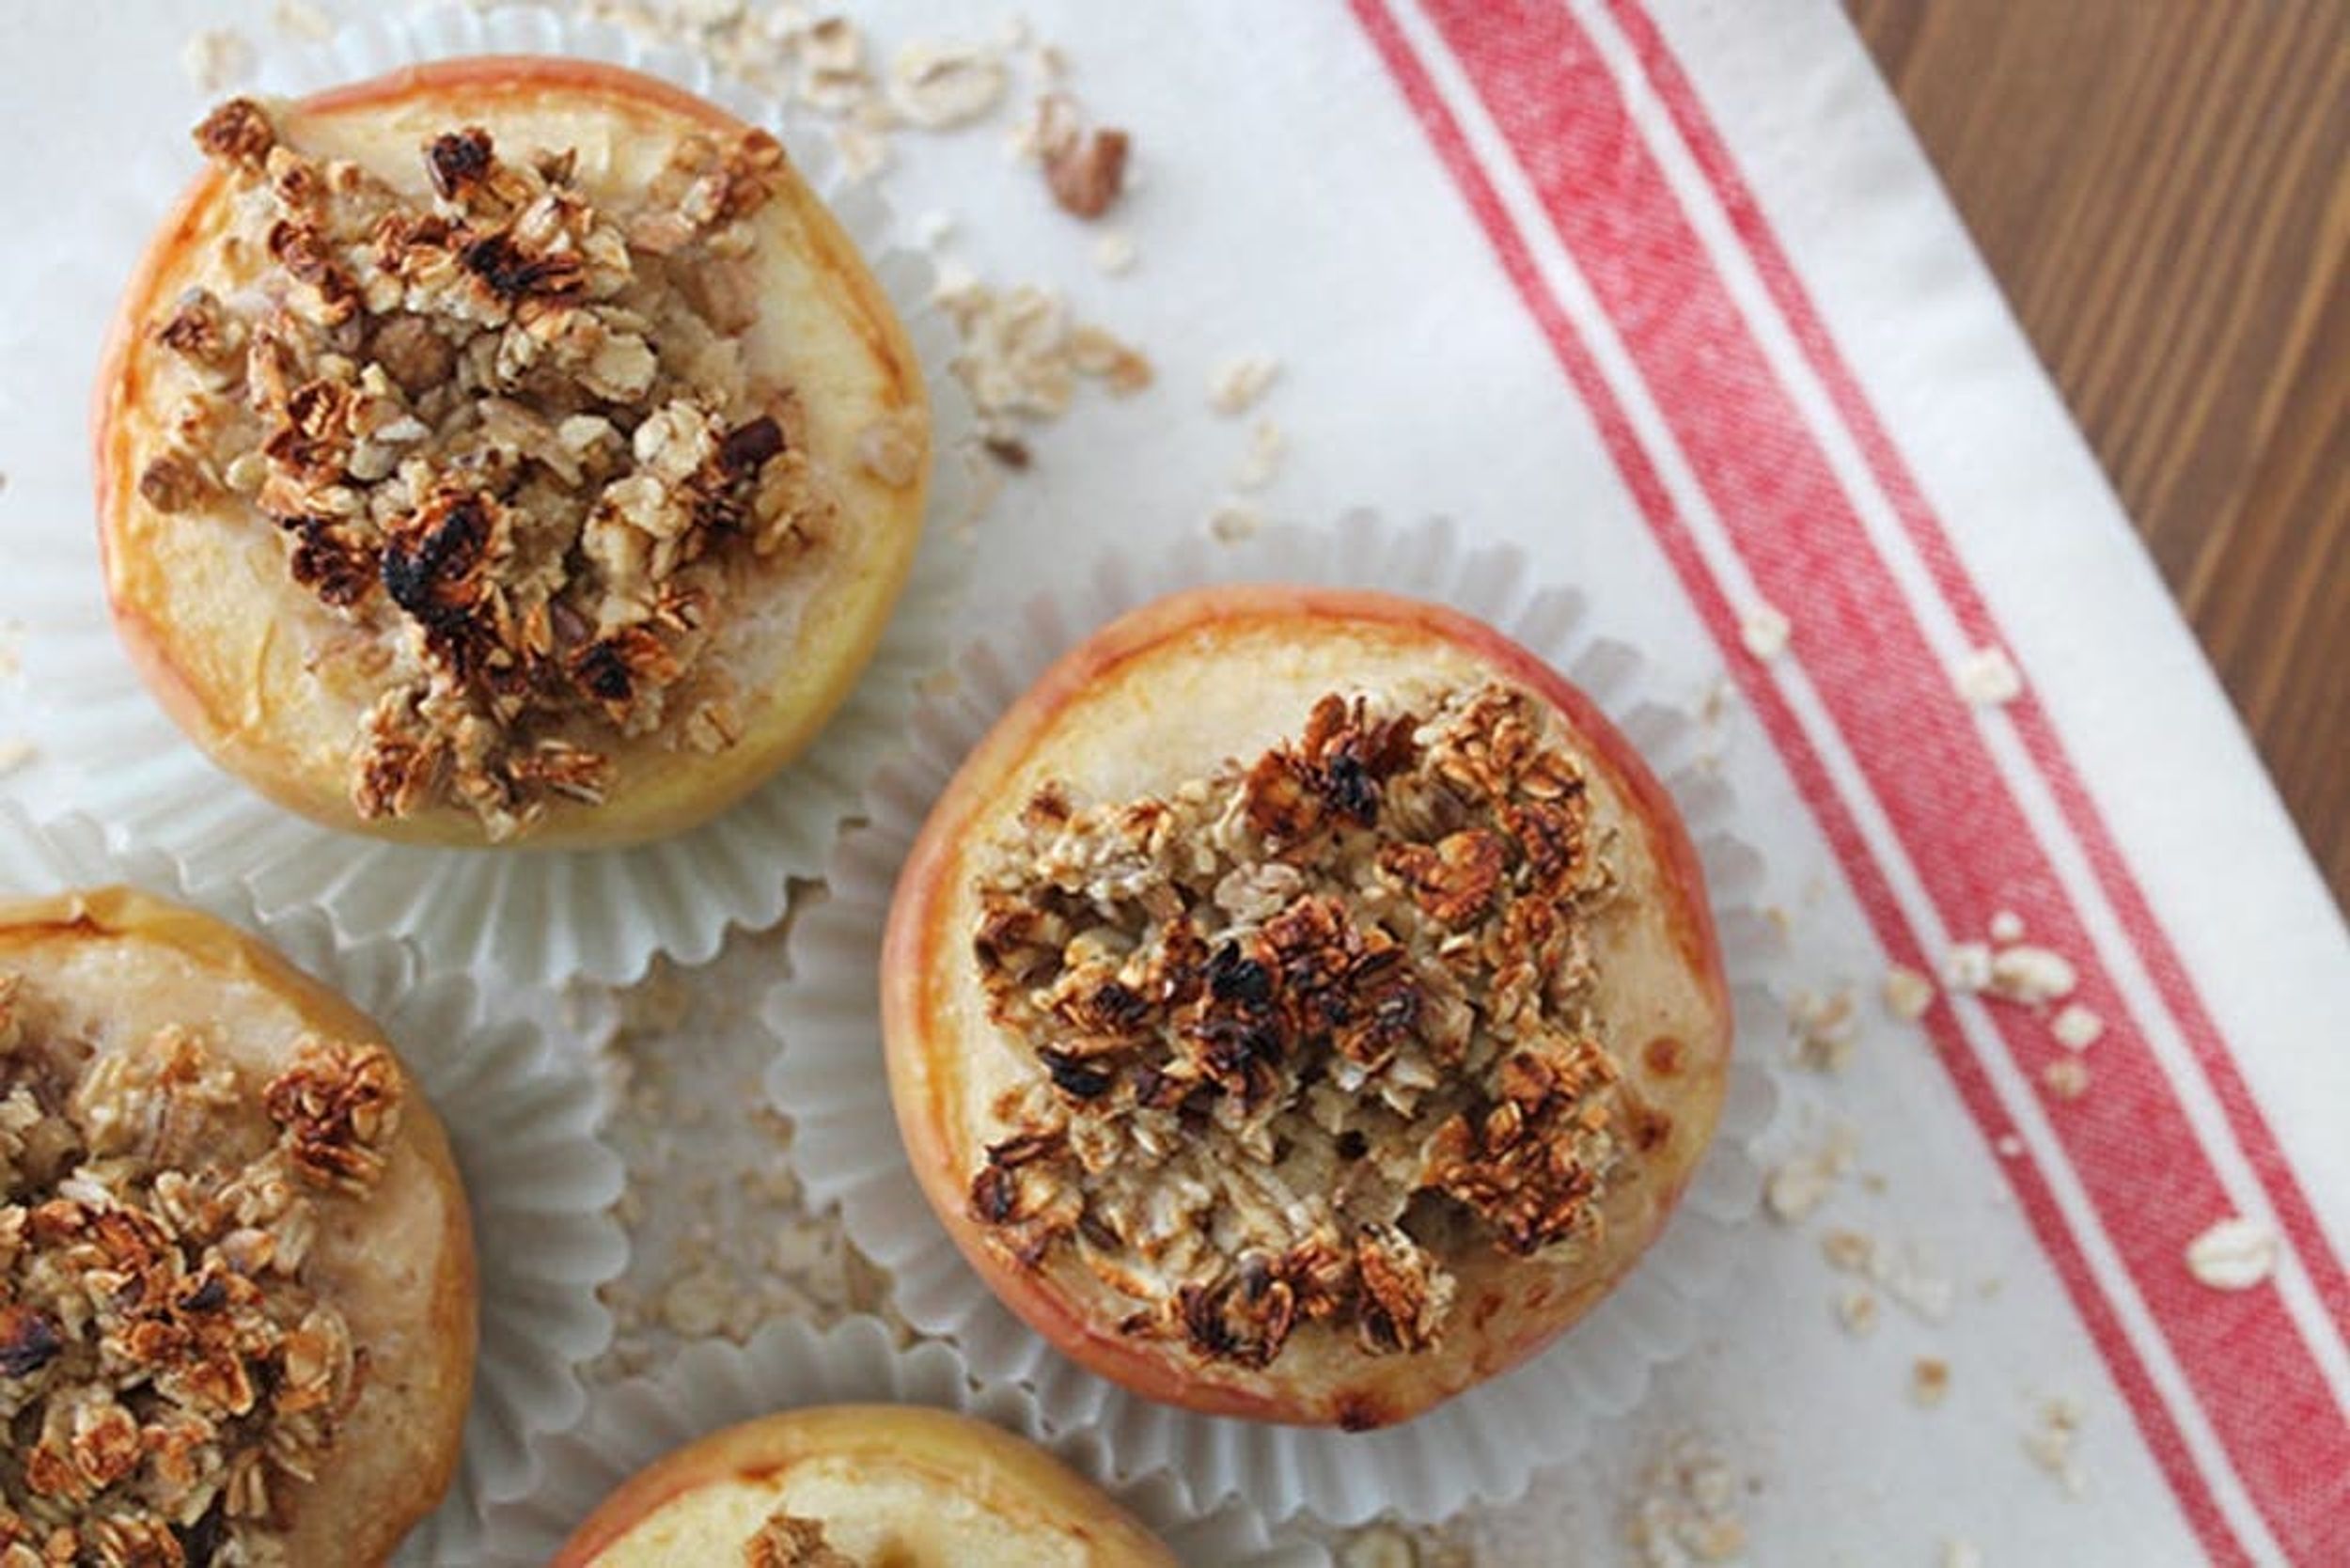 A Twist on Breakfast: Baked Oatmeal Apple Cups